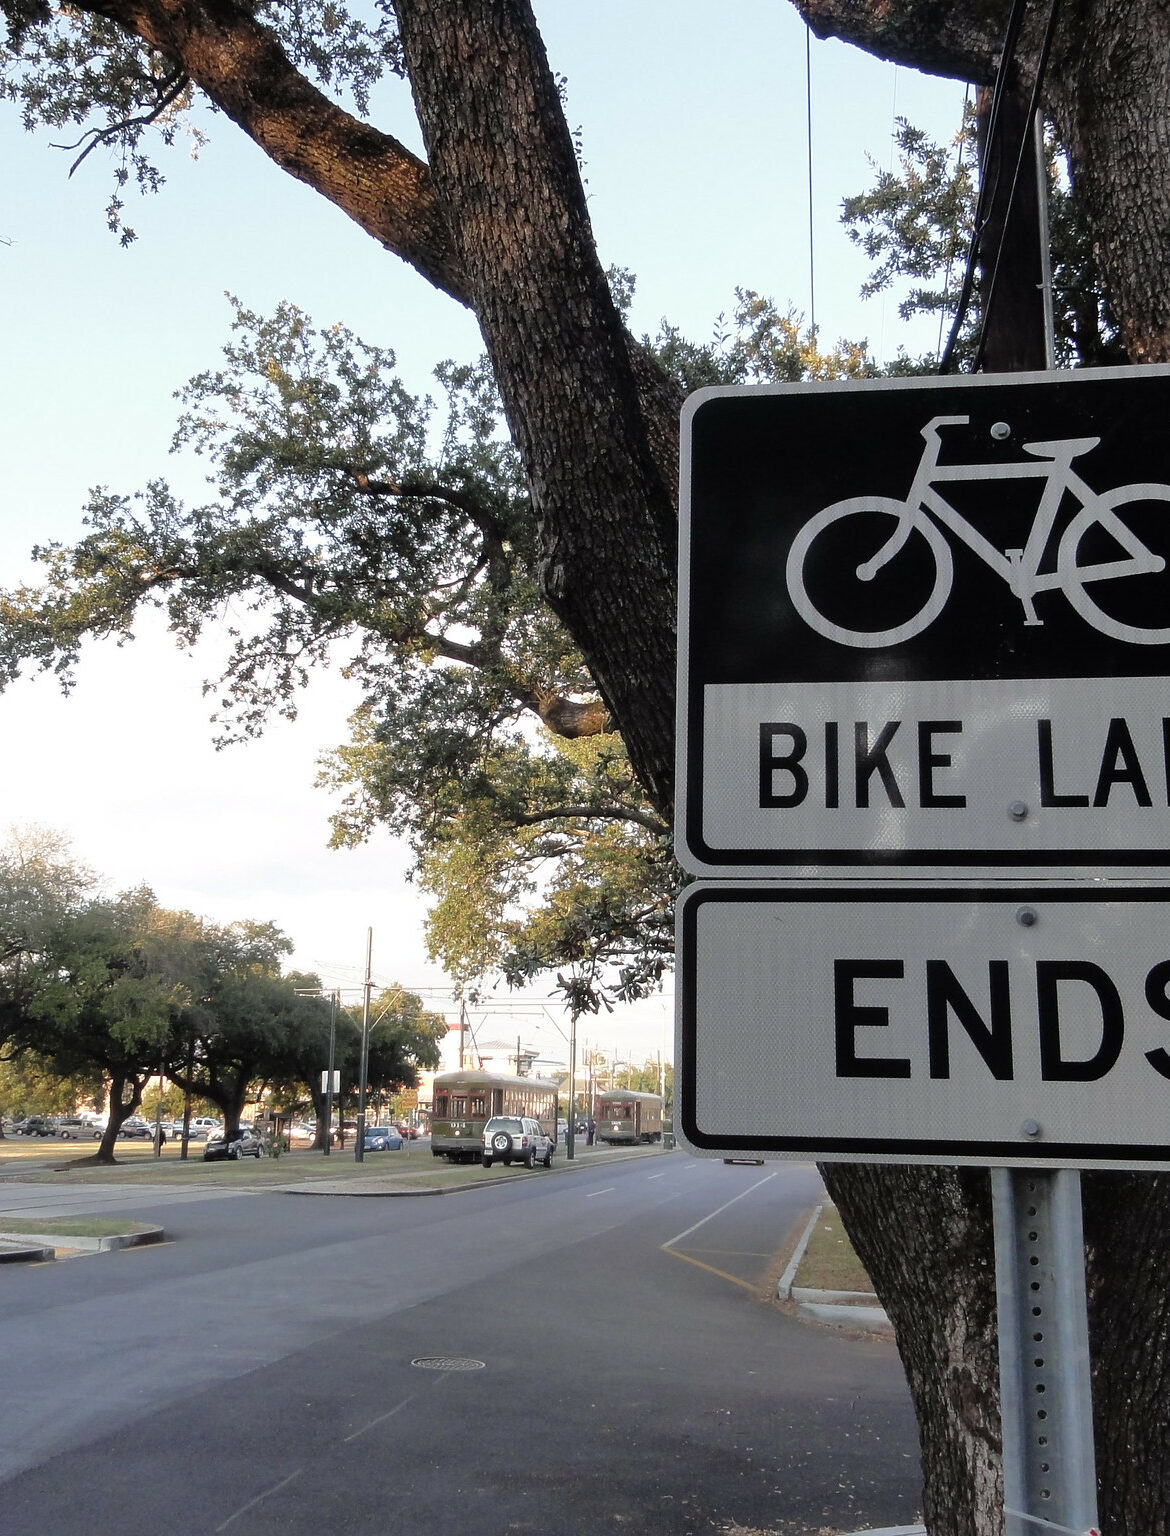 Bike lane ends next to highway lane